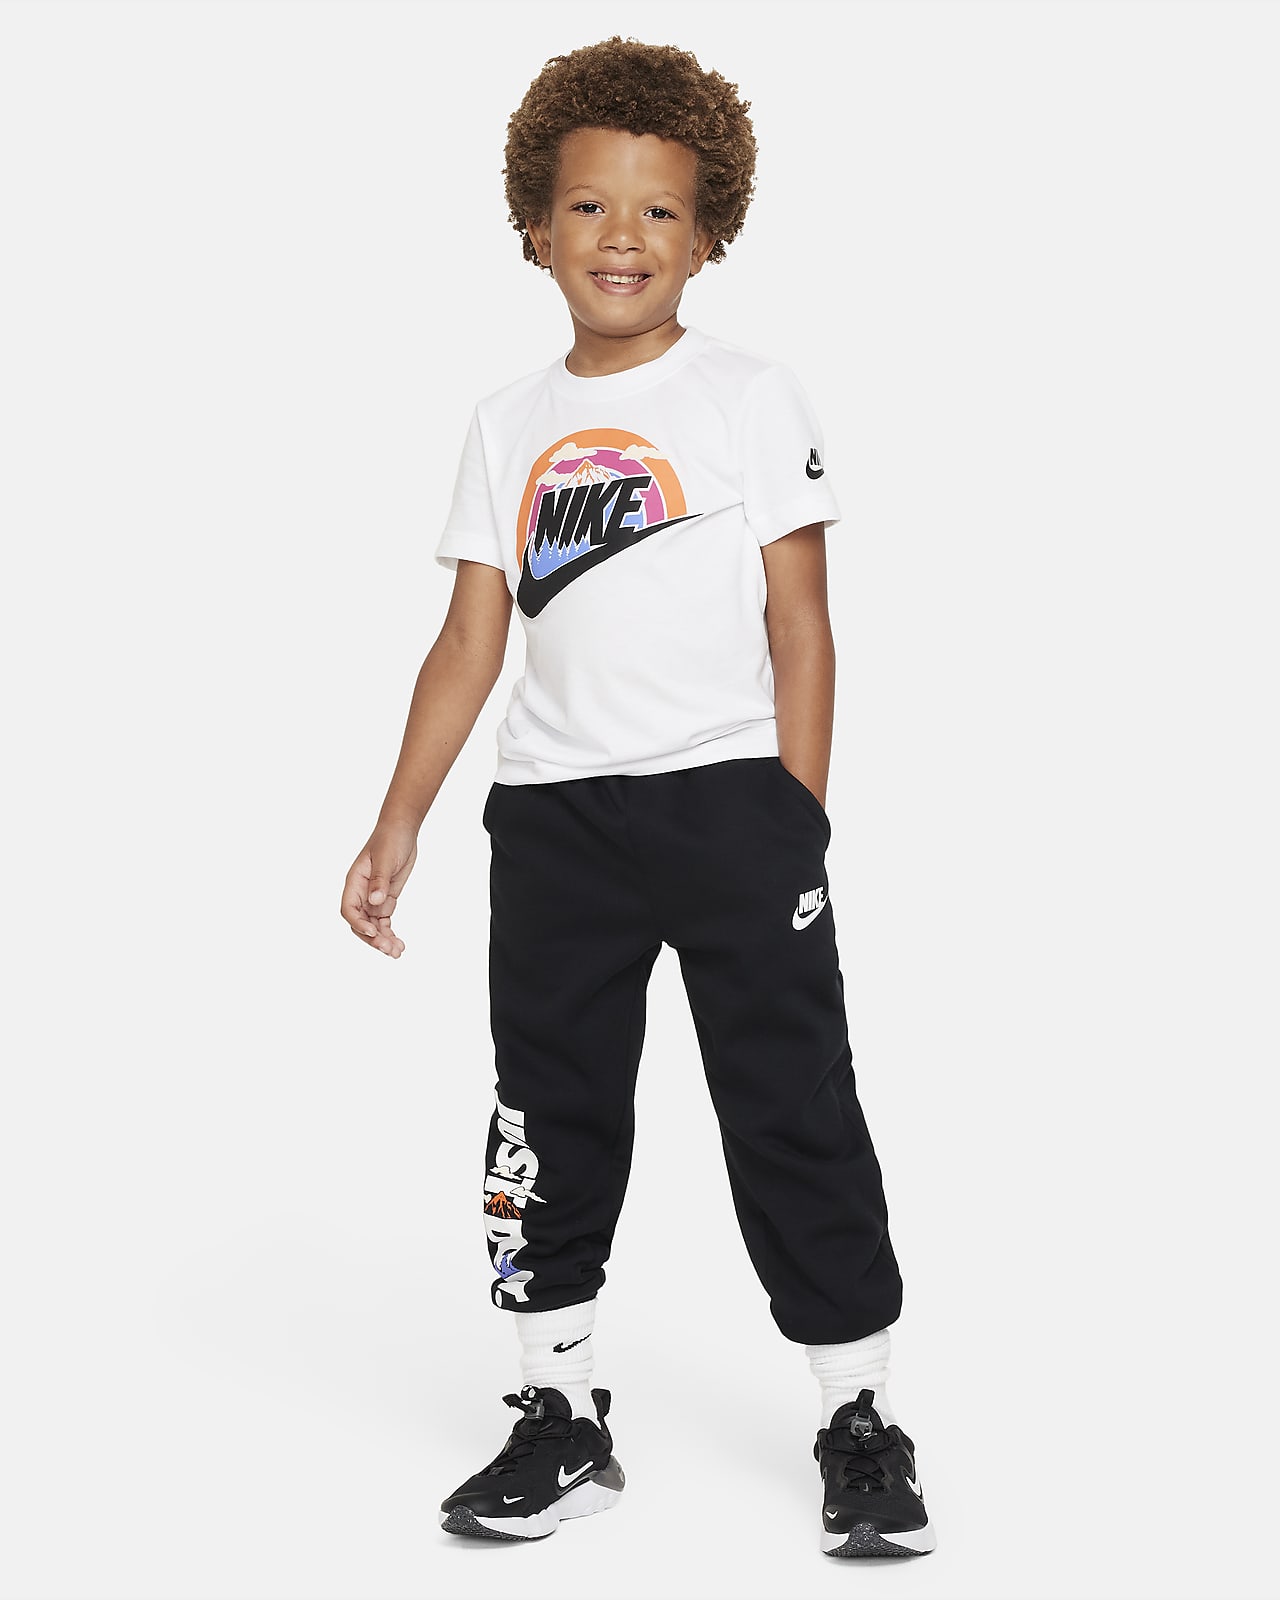 Nike Wilderness Futura Tee T-Shirt. Little Kids